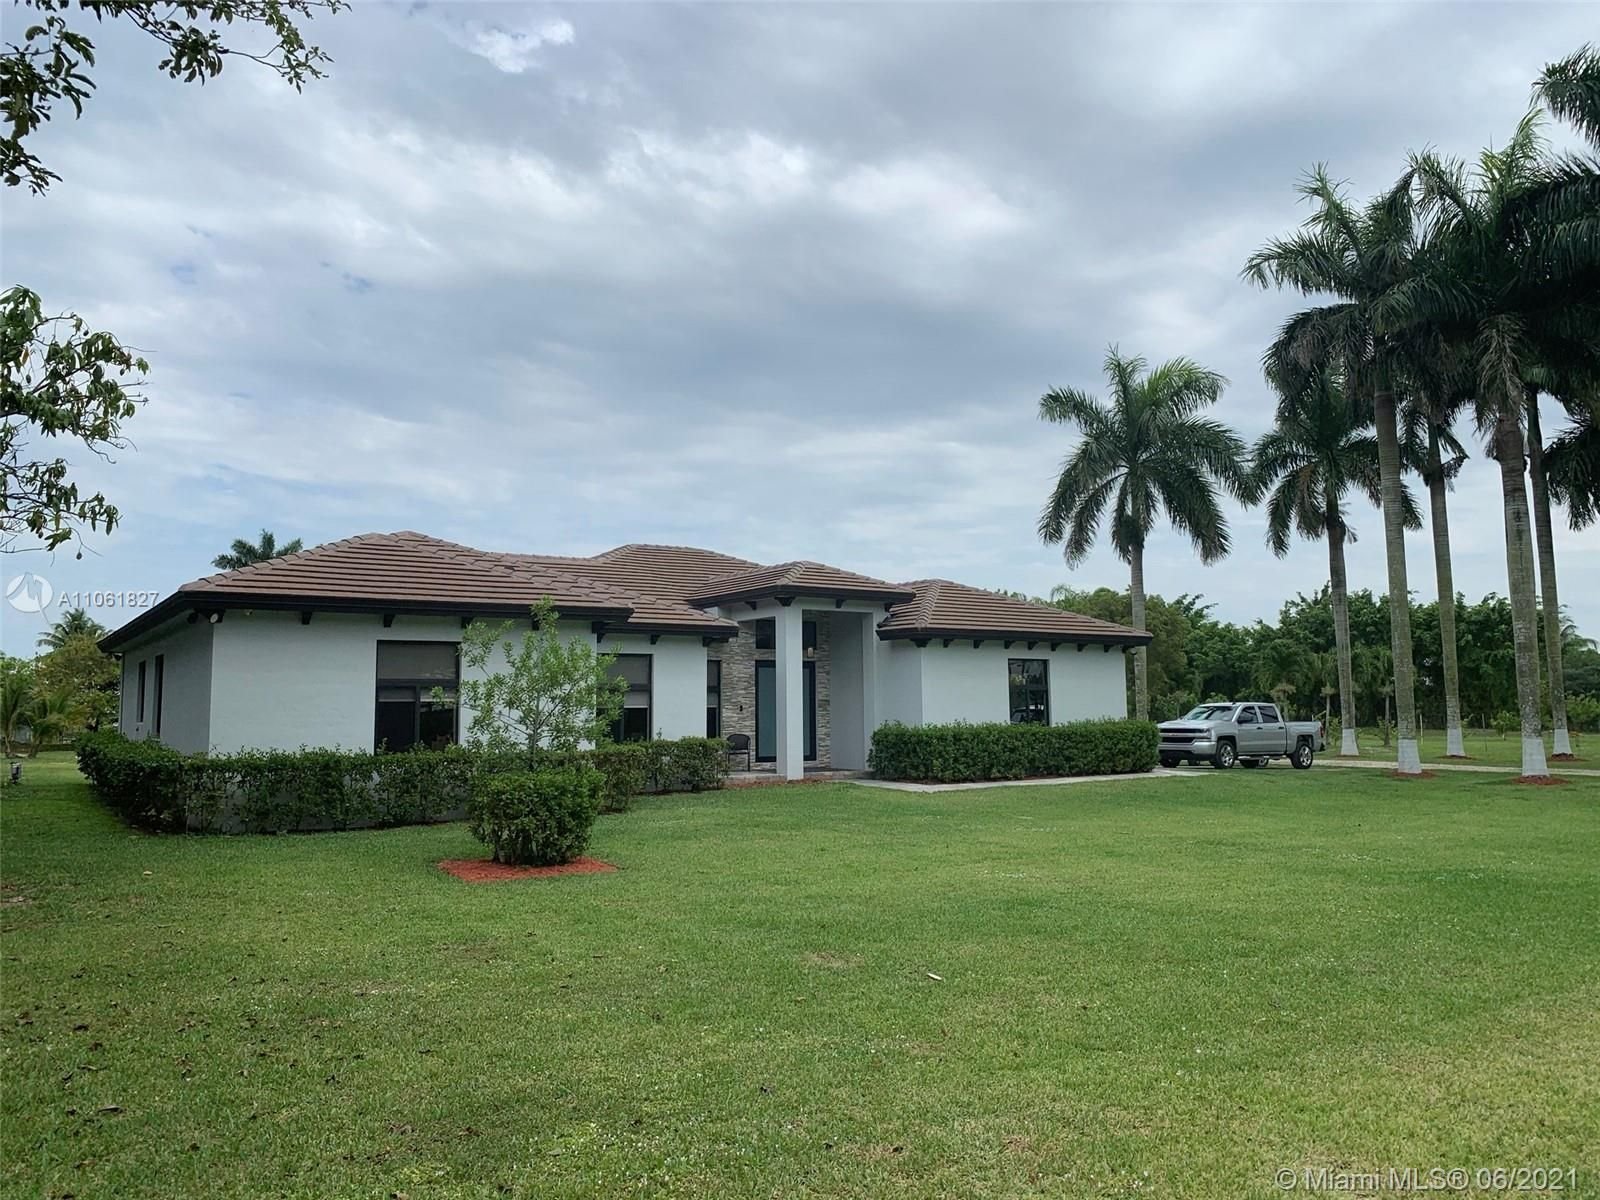 Real estate property located at 17655 182 Avenue, Miami-Dade County, Miami, FL